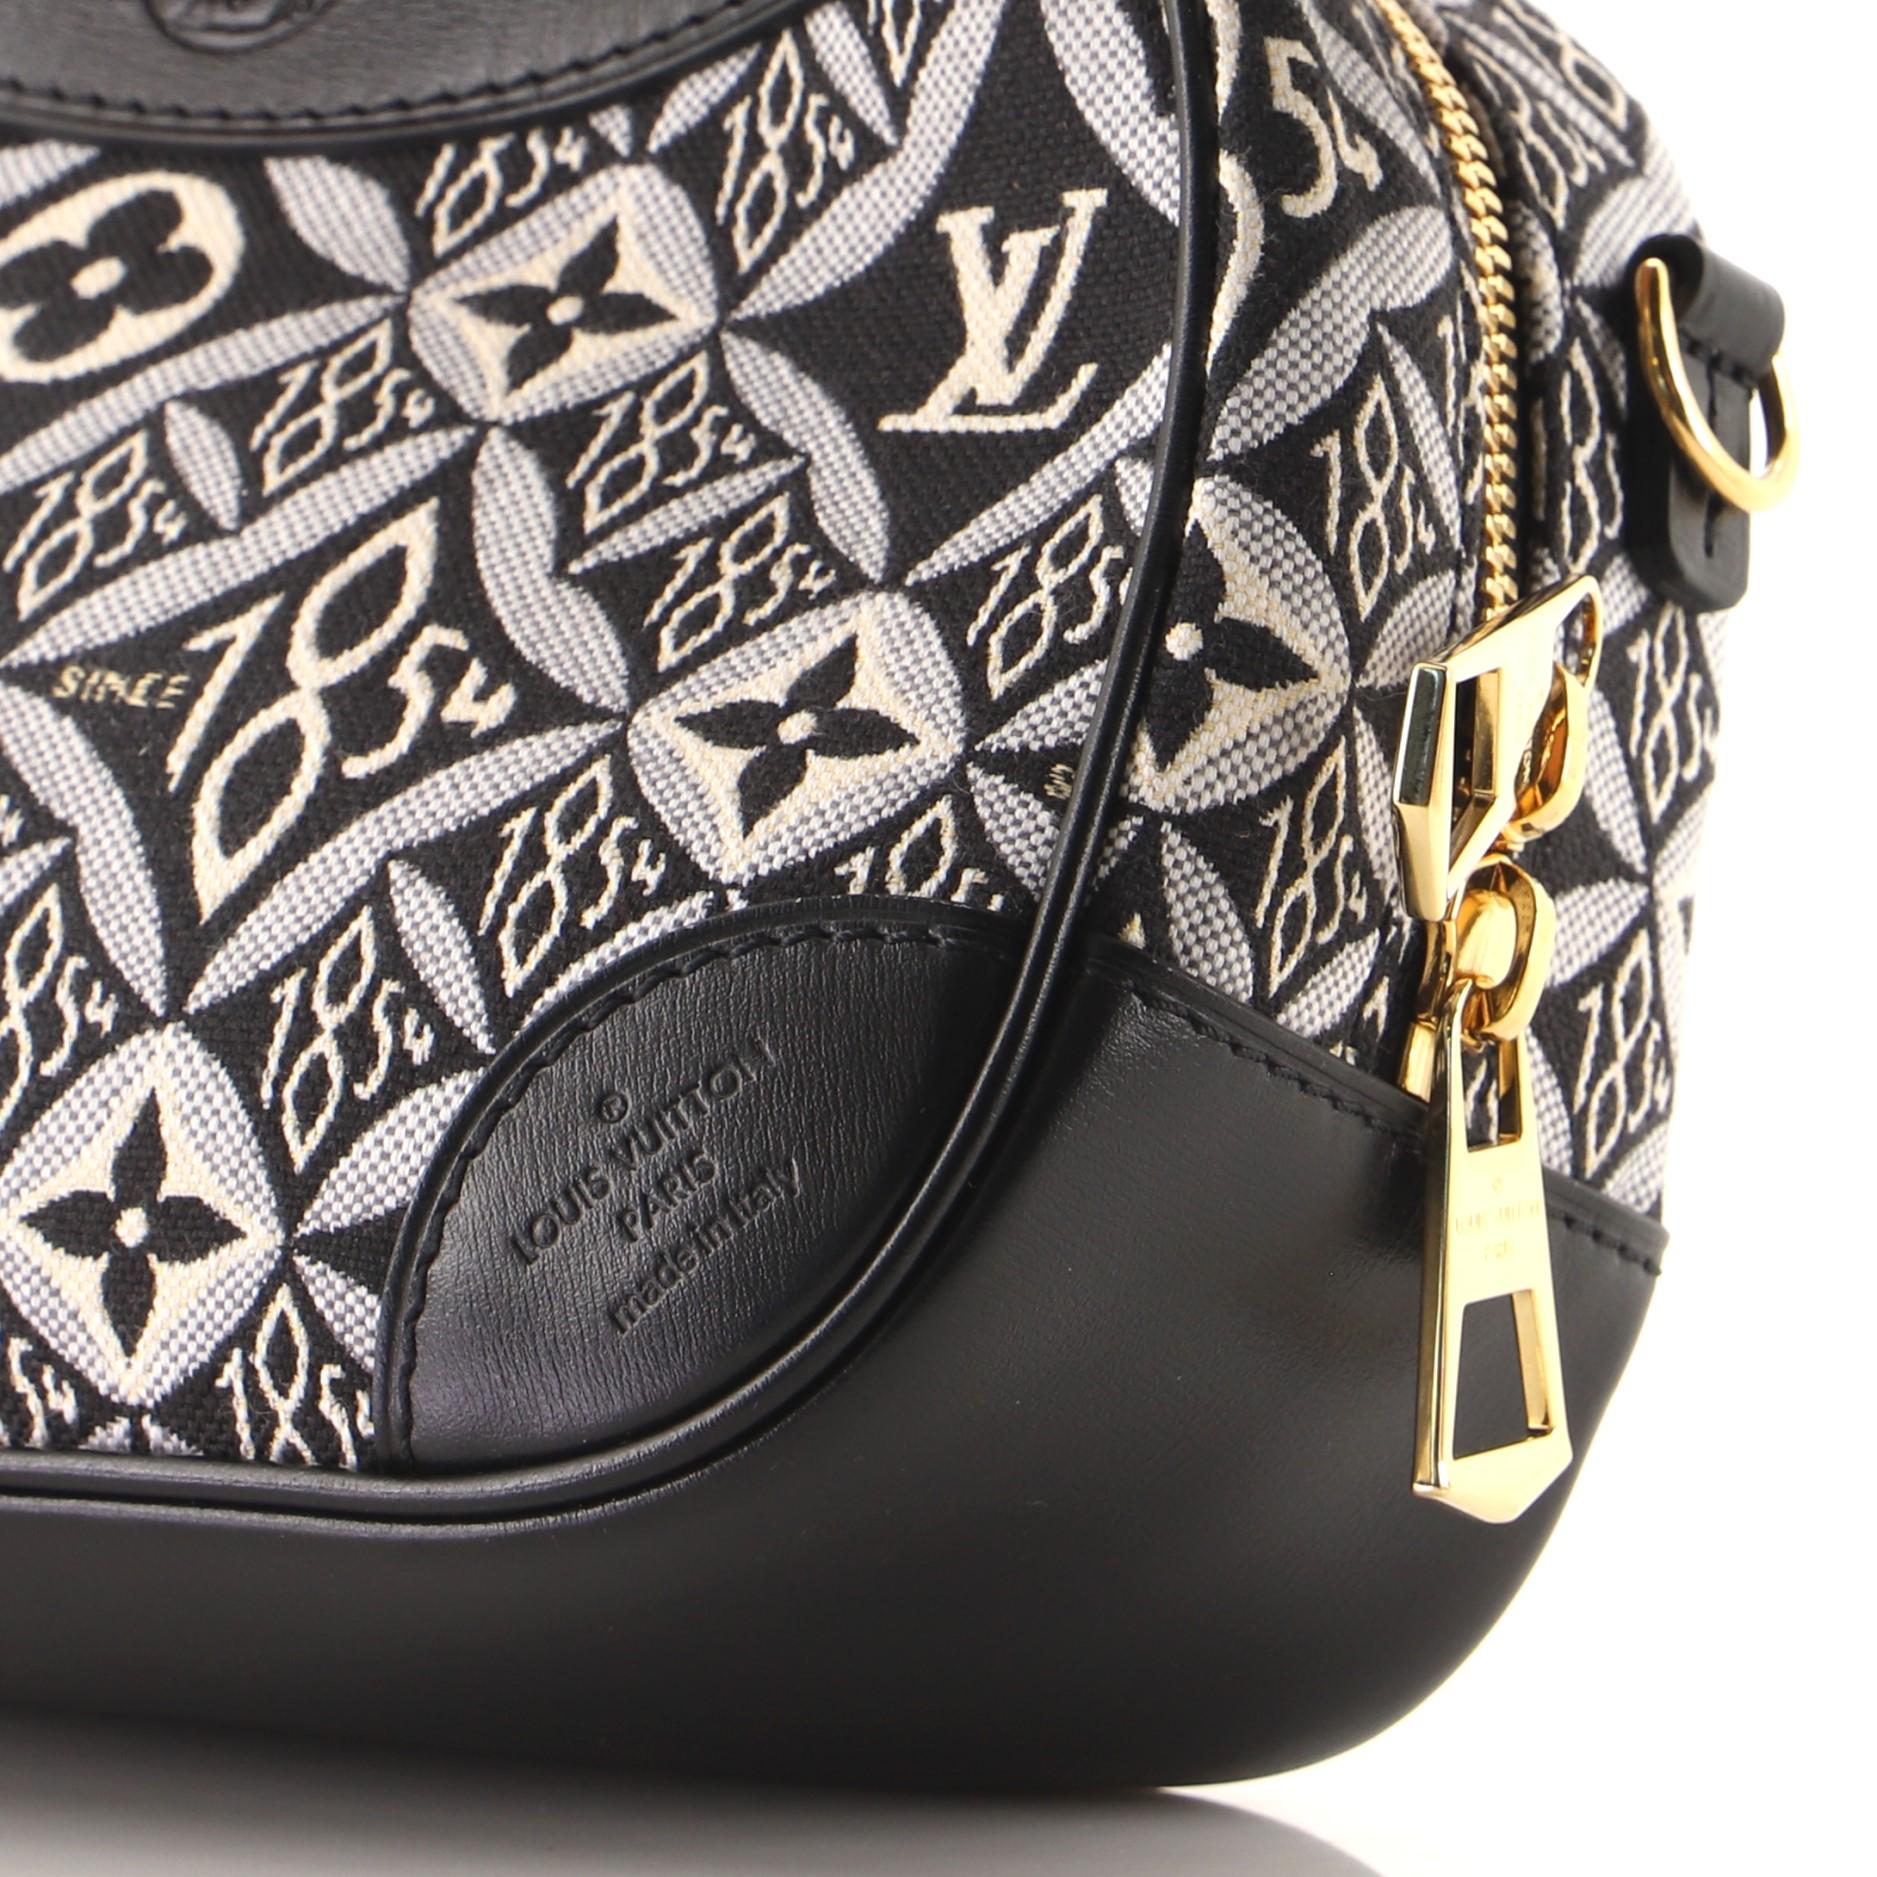 Louis Vuitton Deauville Handbag Limited Edition Since 1854 Monogram Jacquard Min 2